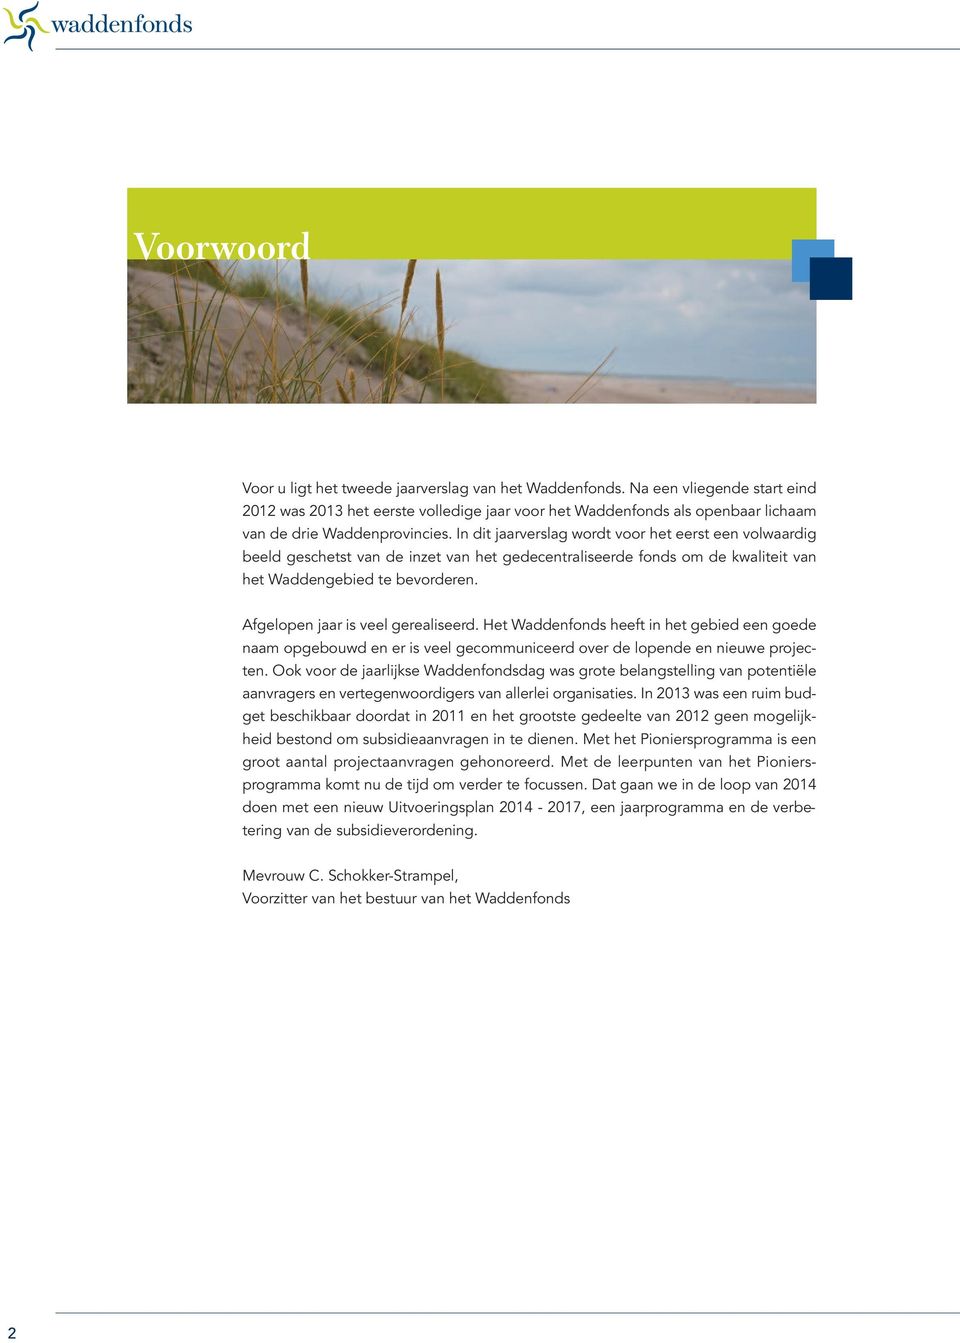 In dit jaarverslag wordt voor het eerst een volwaardig beeld geschetst van de inzet van het gedecentraliseerde fonds om de kwaliteit van het Waddengebied te bevorderen.